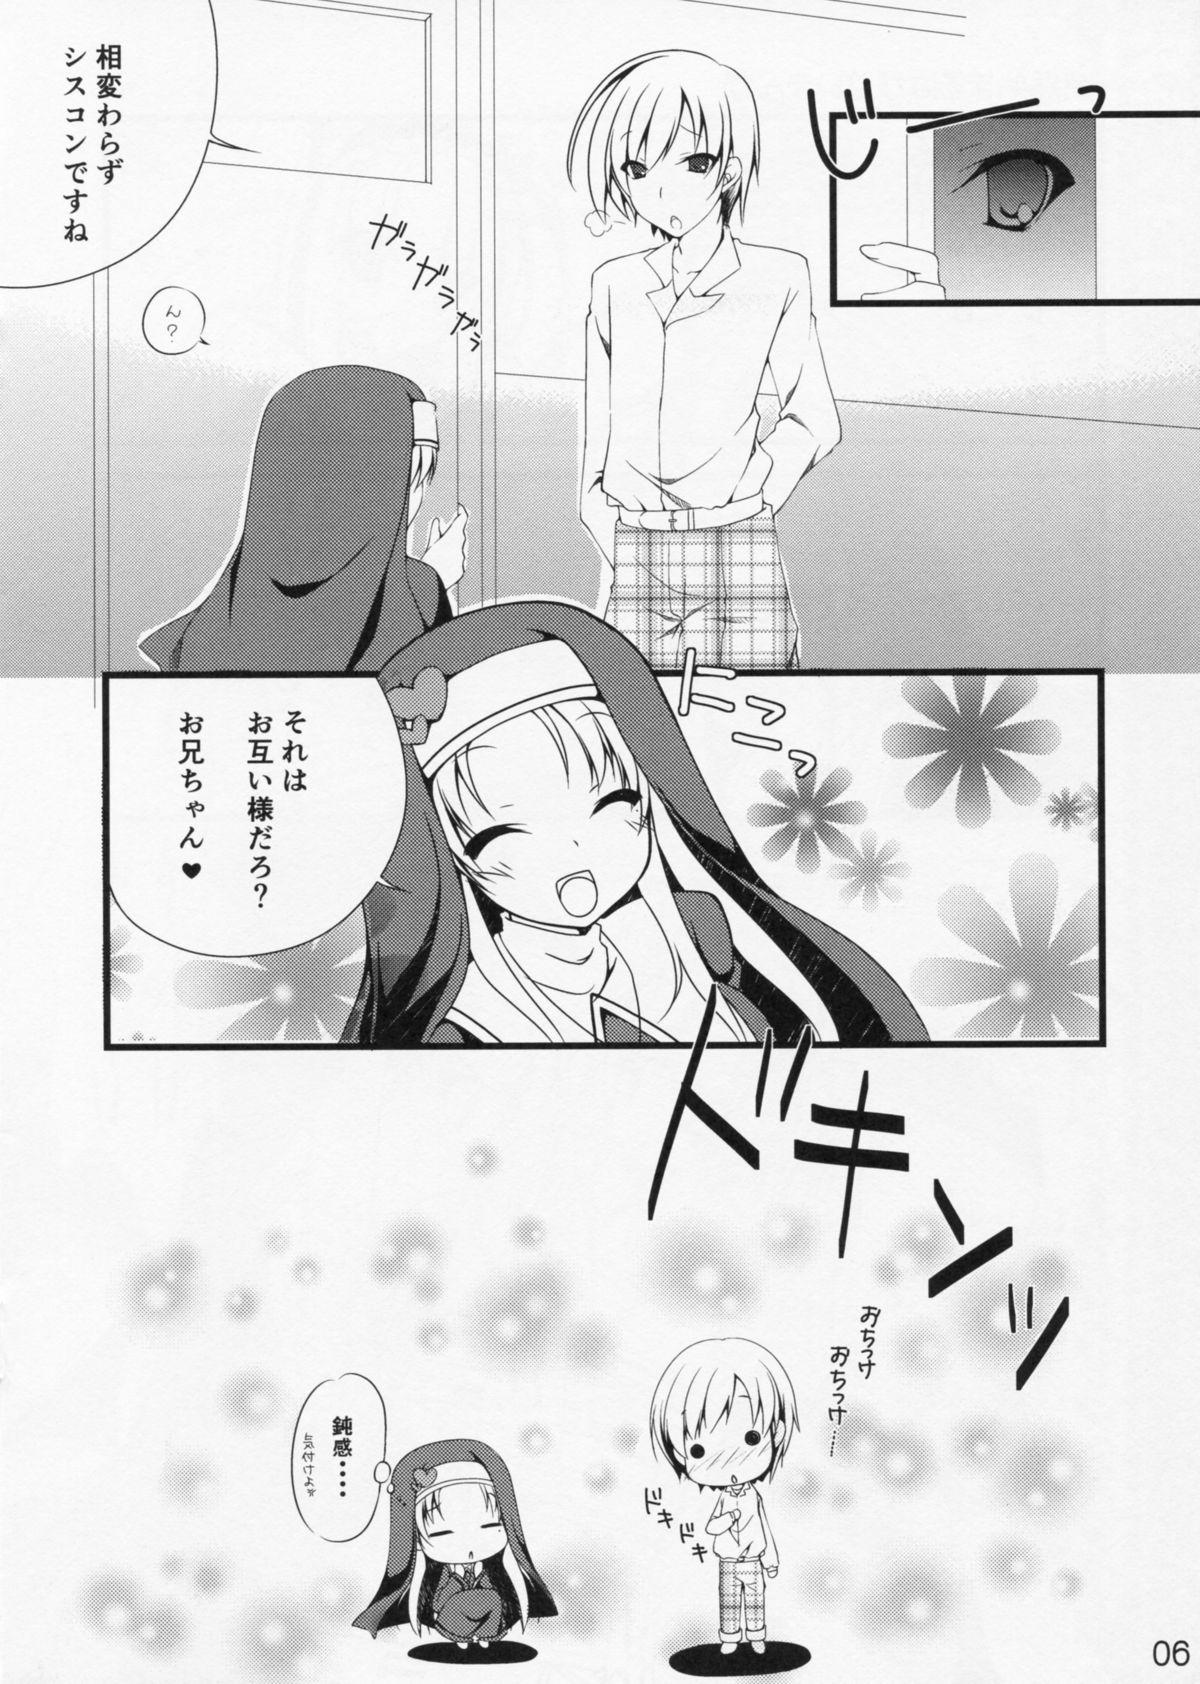 Busty Hentai Neko no Ouji-sama. + Re:set - Hentai ouji to warawanai neko Soapy - Page 18